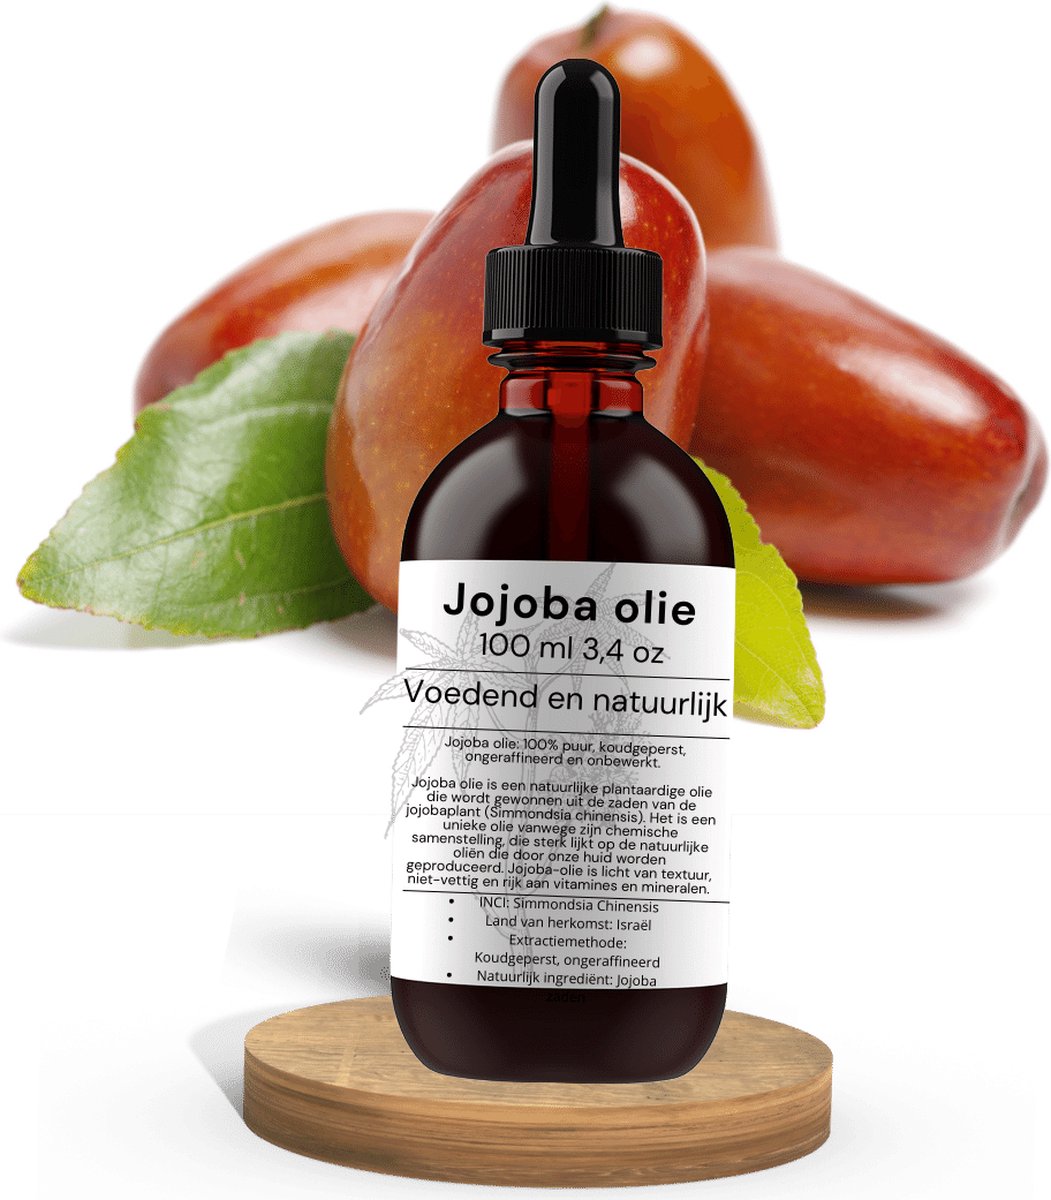 Pure Jojoba olie- Natuurlijk & Koudgeperst| Voedt, Hydrateert en Beschermt Huid, Haar en Nagels - Beschermt de Huid Tegen Veroudering | Premium Kwaliteit | Jojoba-olie | Glazen flesje + Pipet 100ml